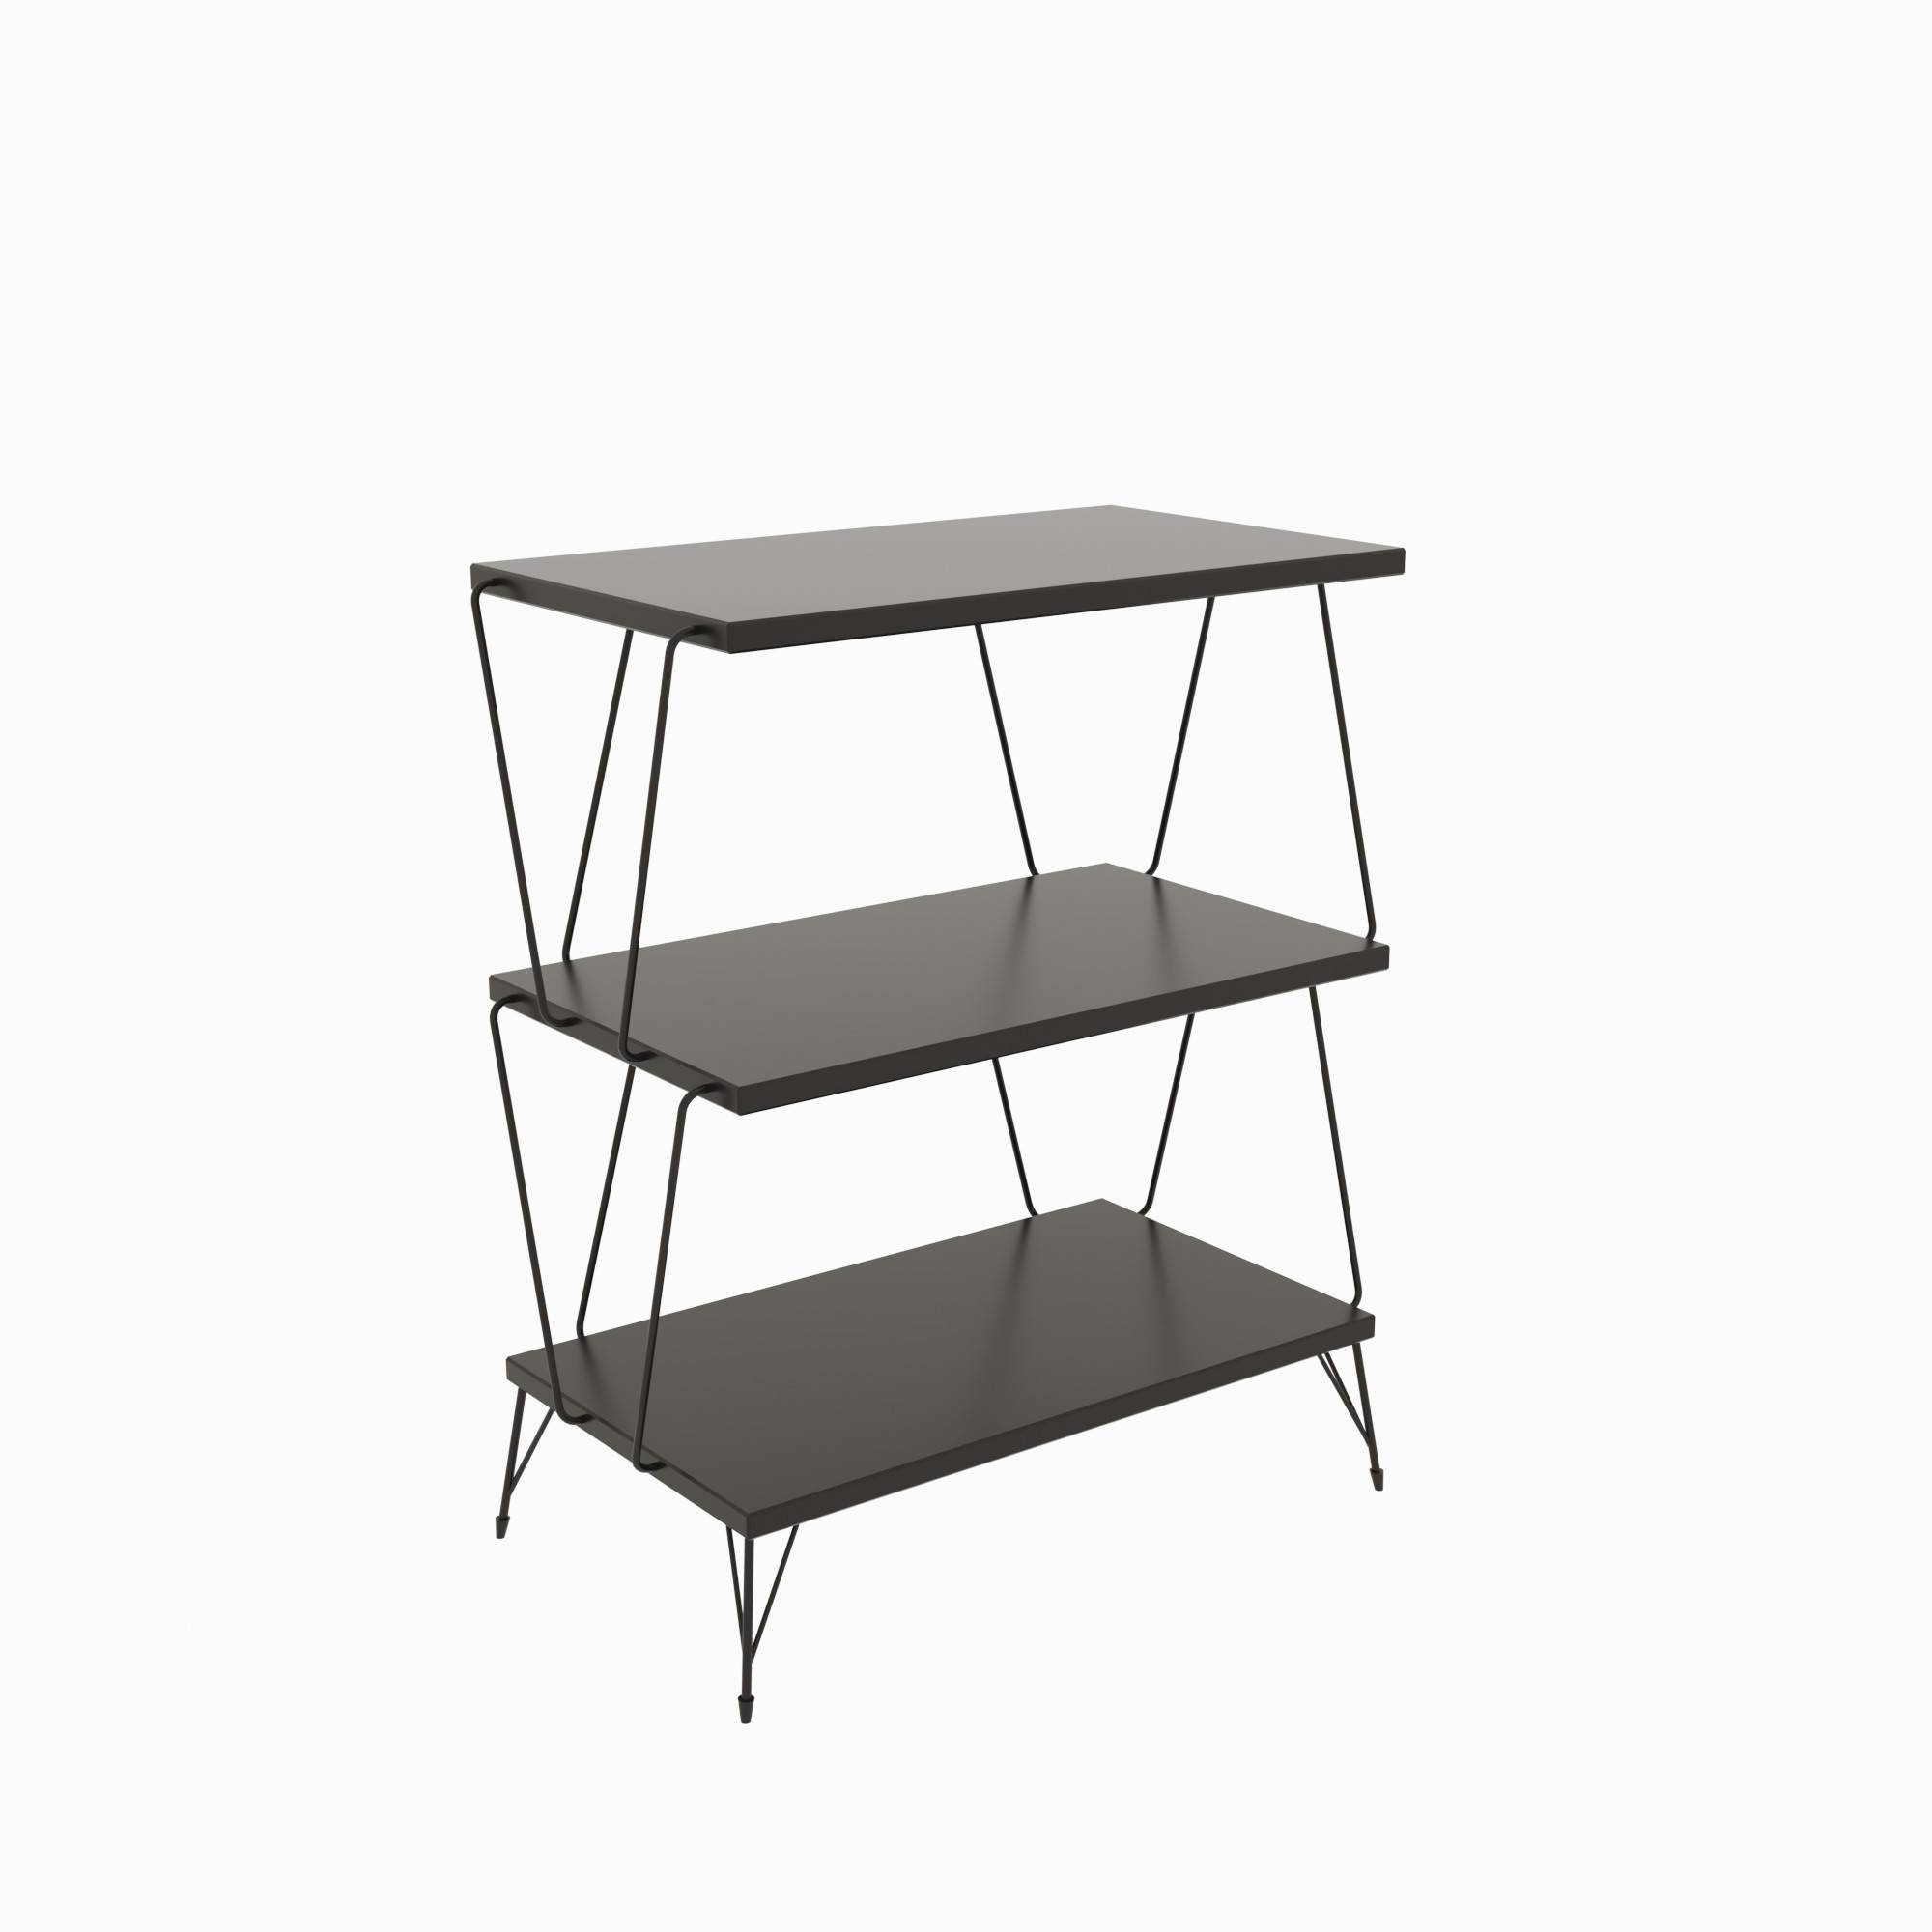 Ozone 3 tier side table - Metallo nero e legno antracite